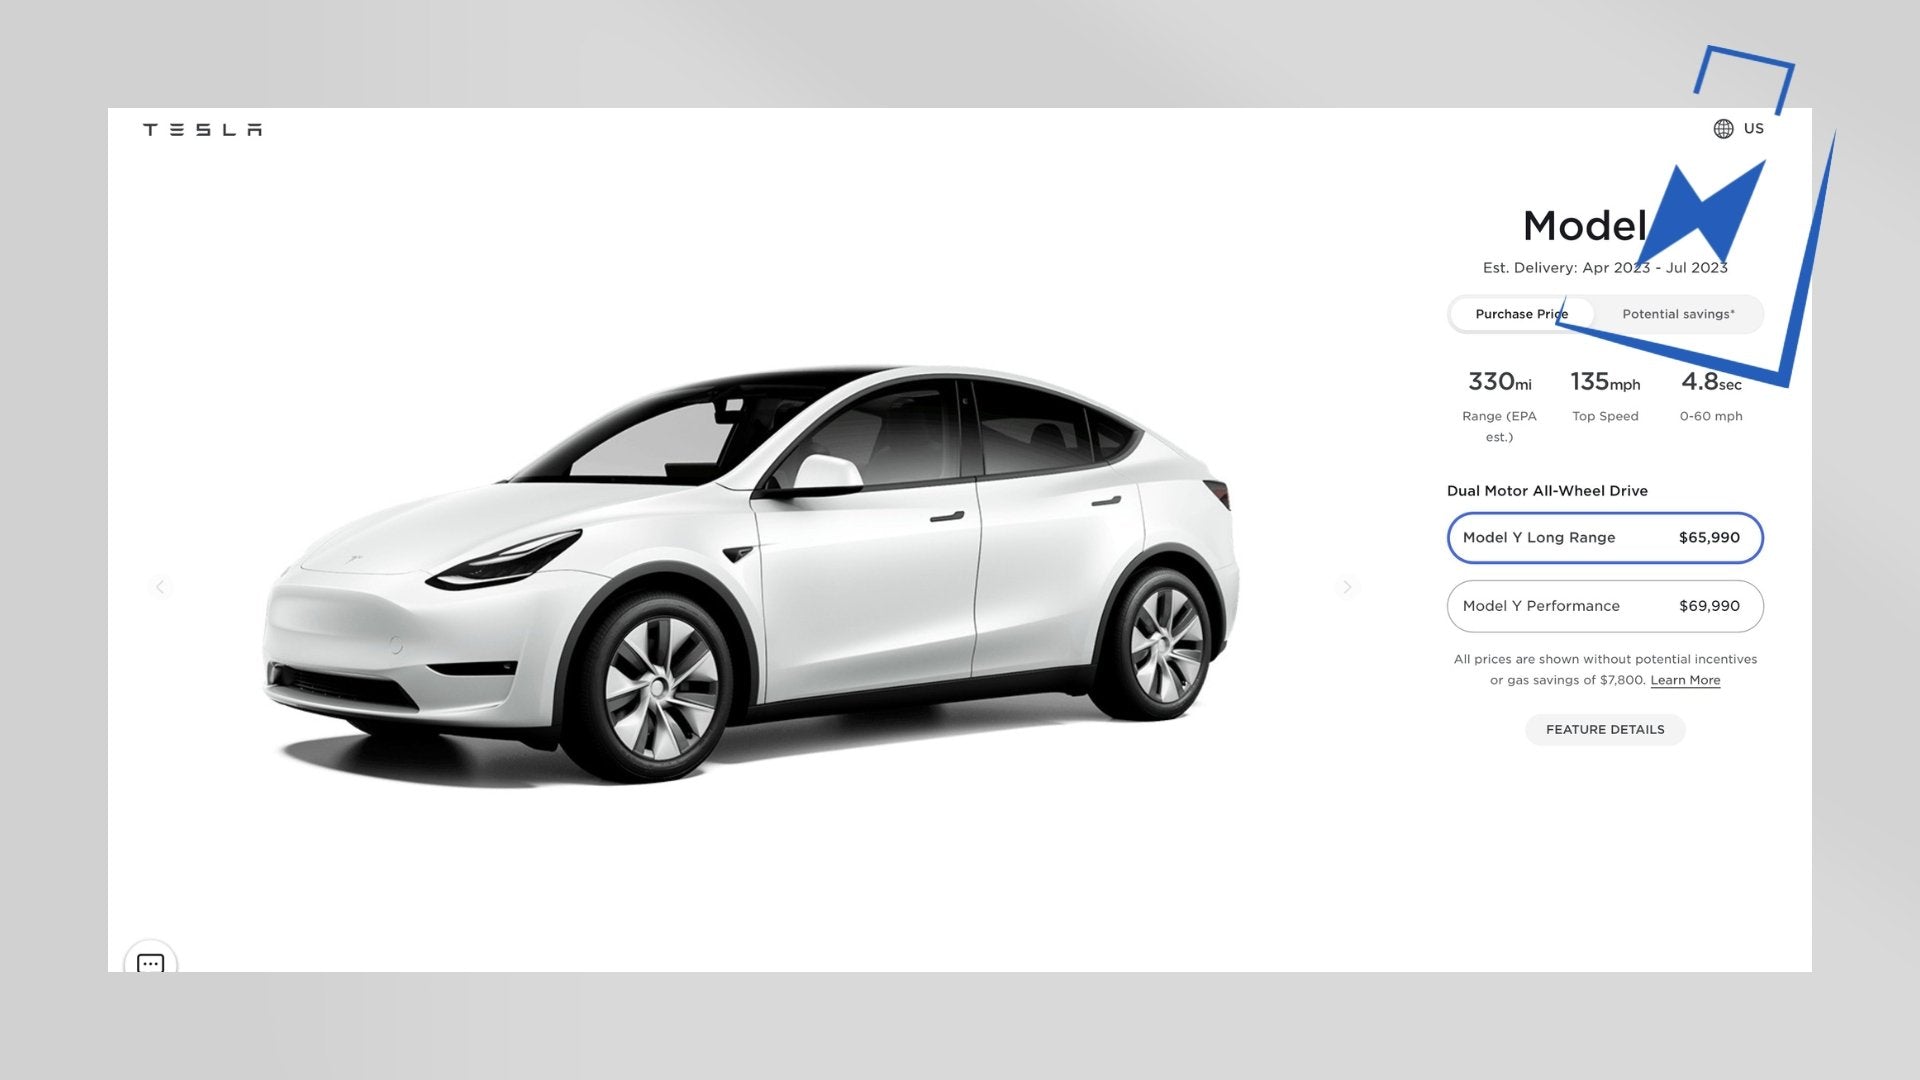 Preiserhöhung bei fast allen Tesla Modellen in den USA! - Shop4Tesla